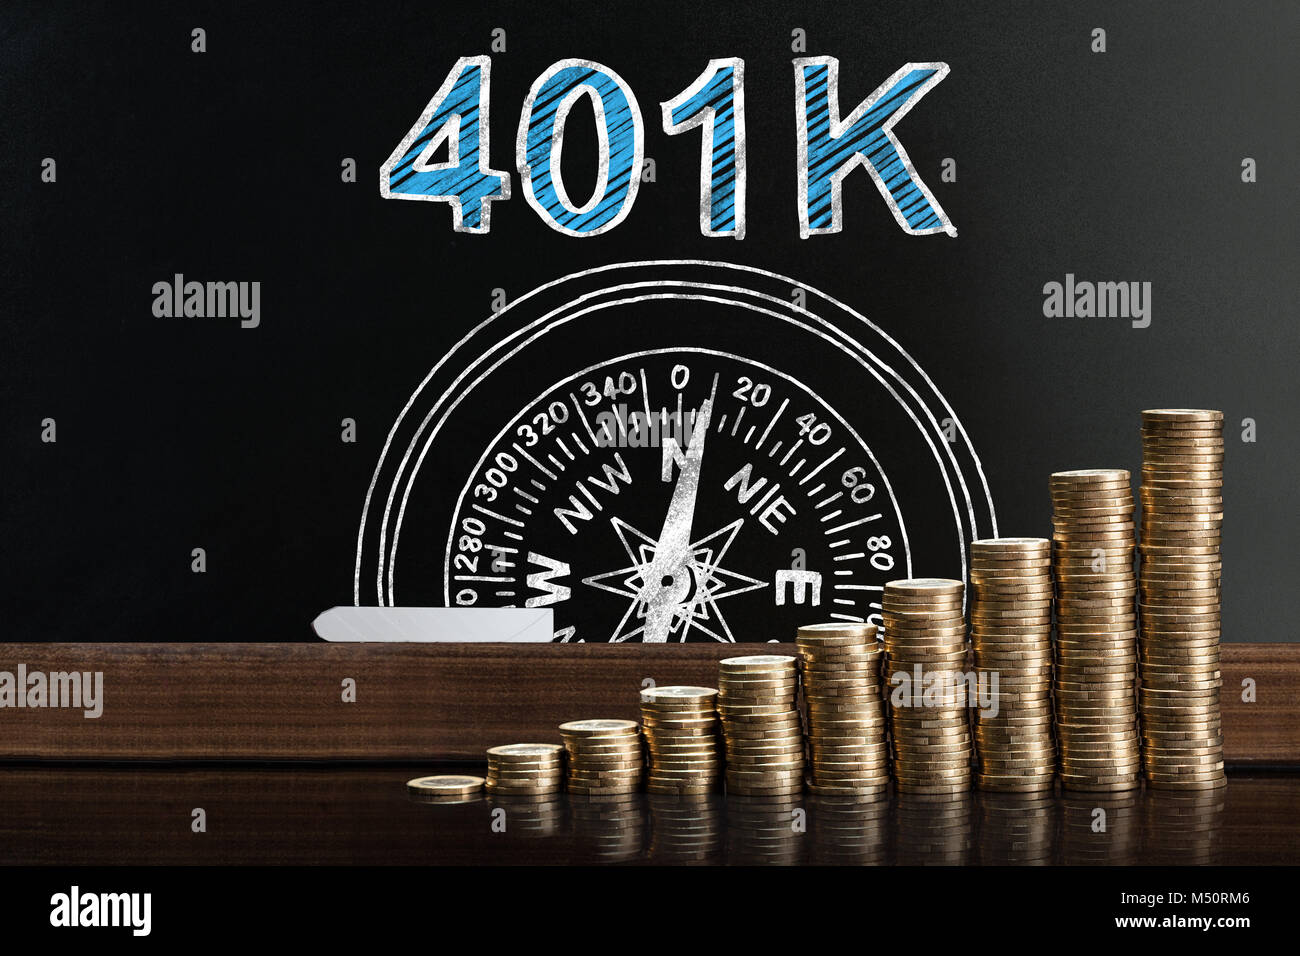 Régime de retraite de 401k sur tableau noir derrière les pièces empilées Banque D'Images